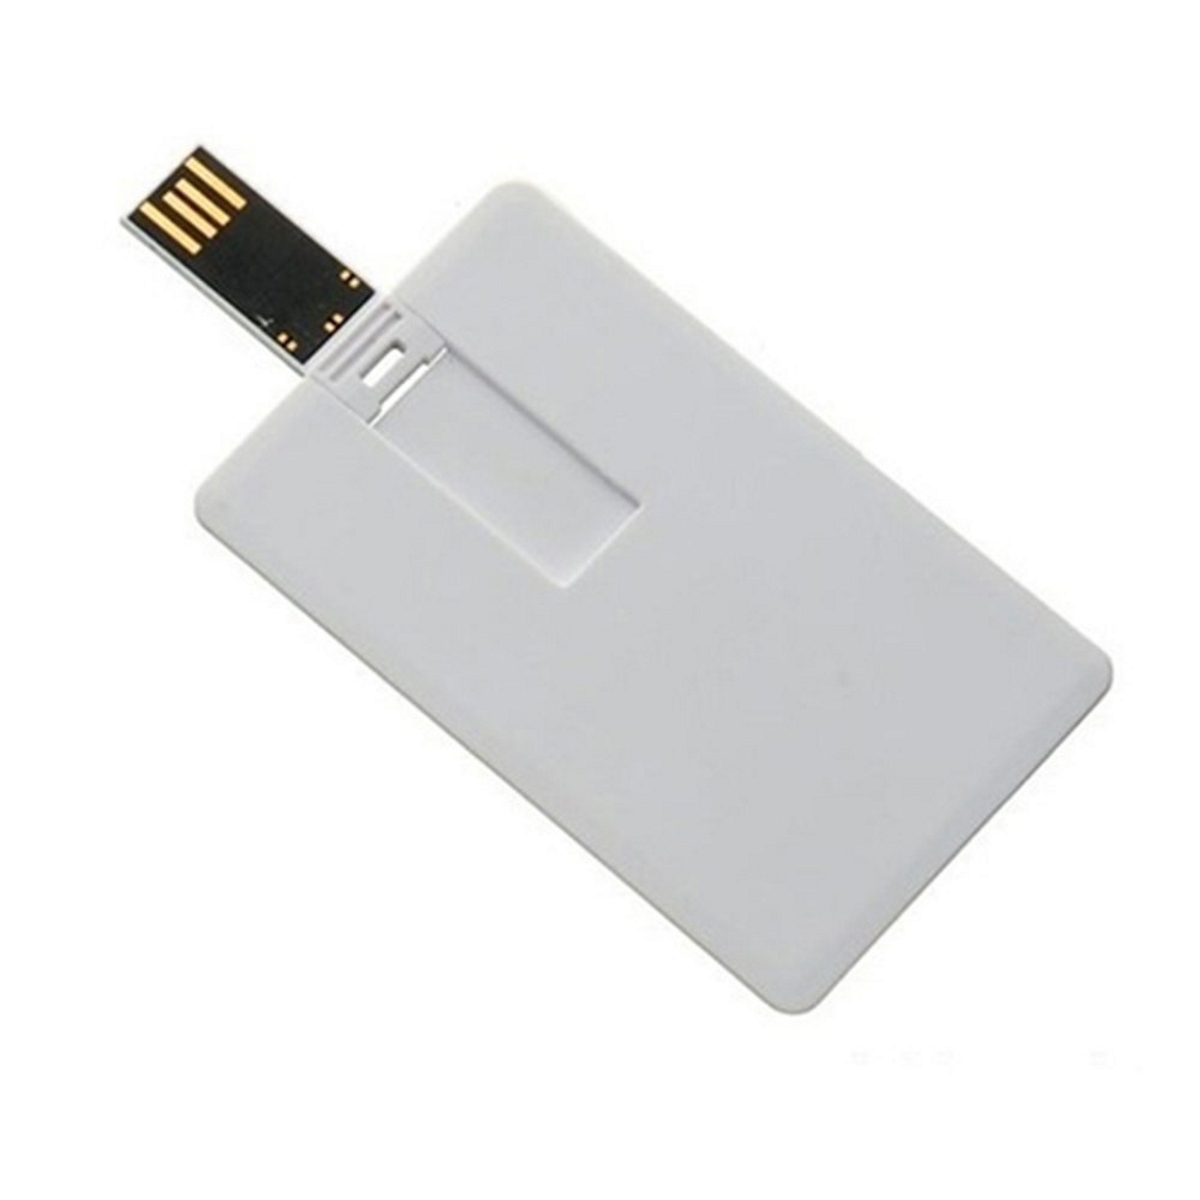 USB GERMANY ® Kreditkarte GB) 64 USB-Stick (Weiss